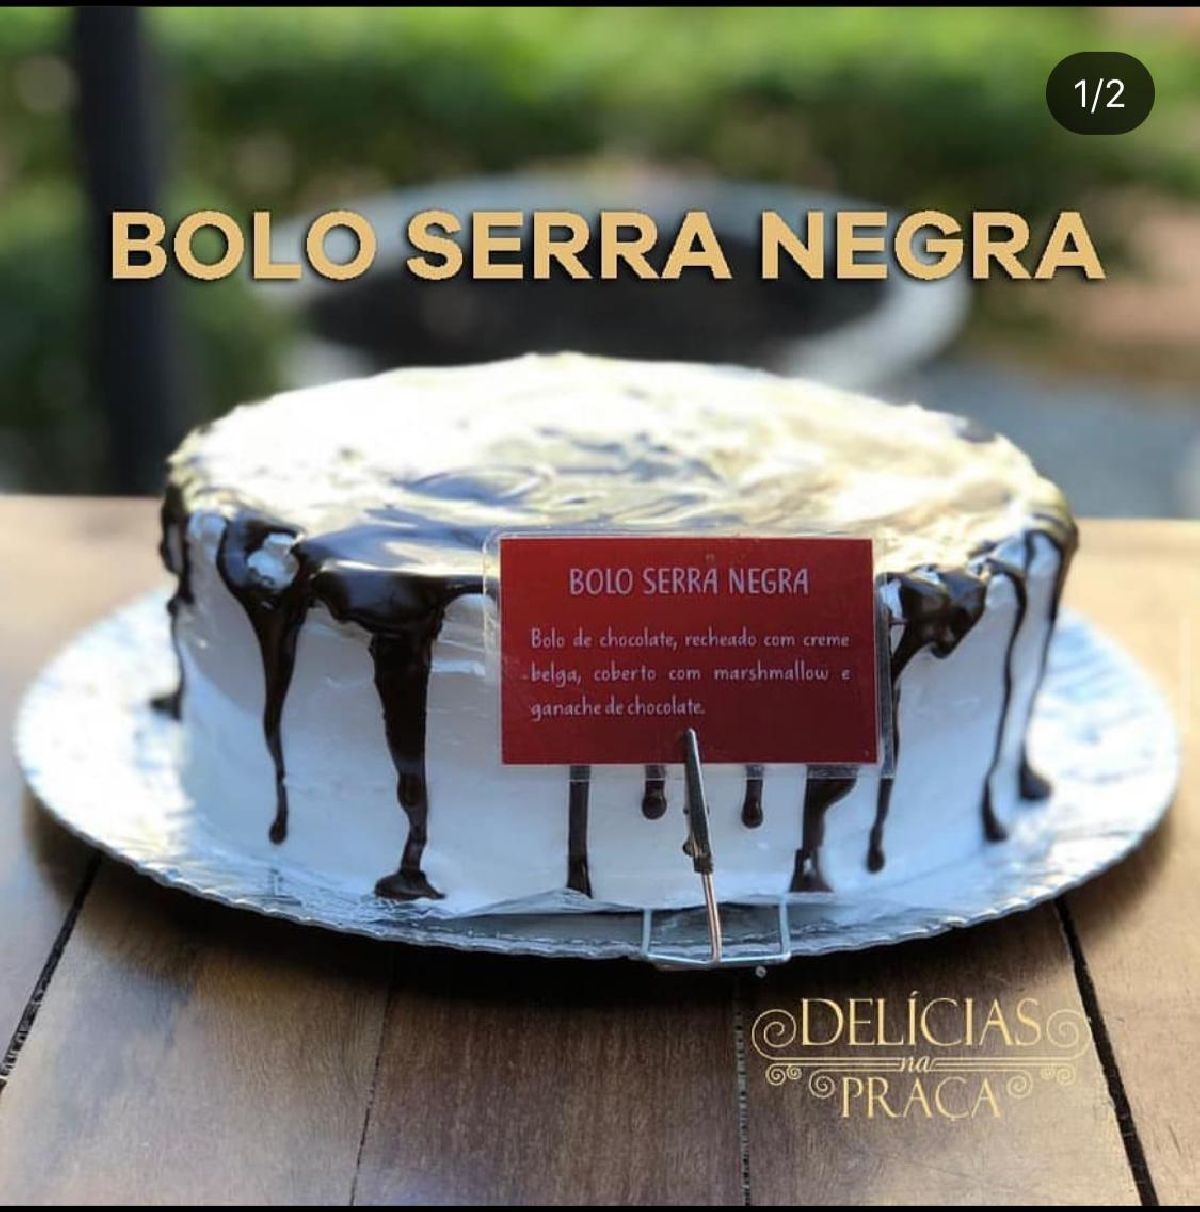 Delícias na Praça tem bolo em homenagem à Serra Negra com preço especial, em março